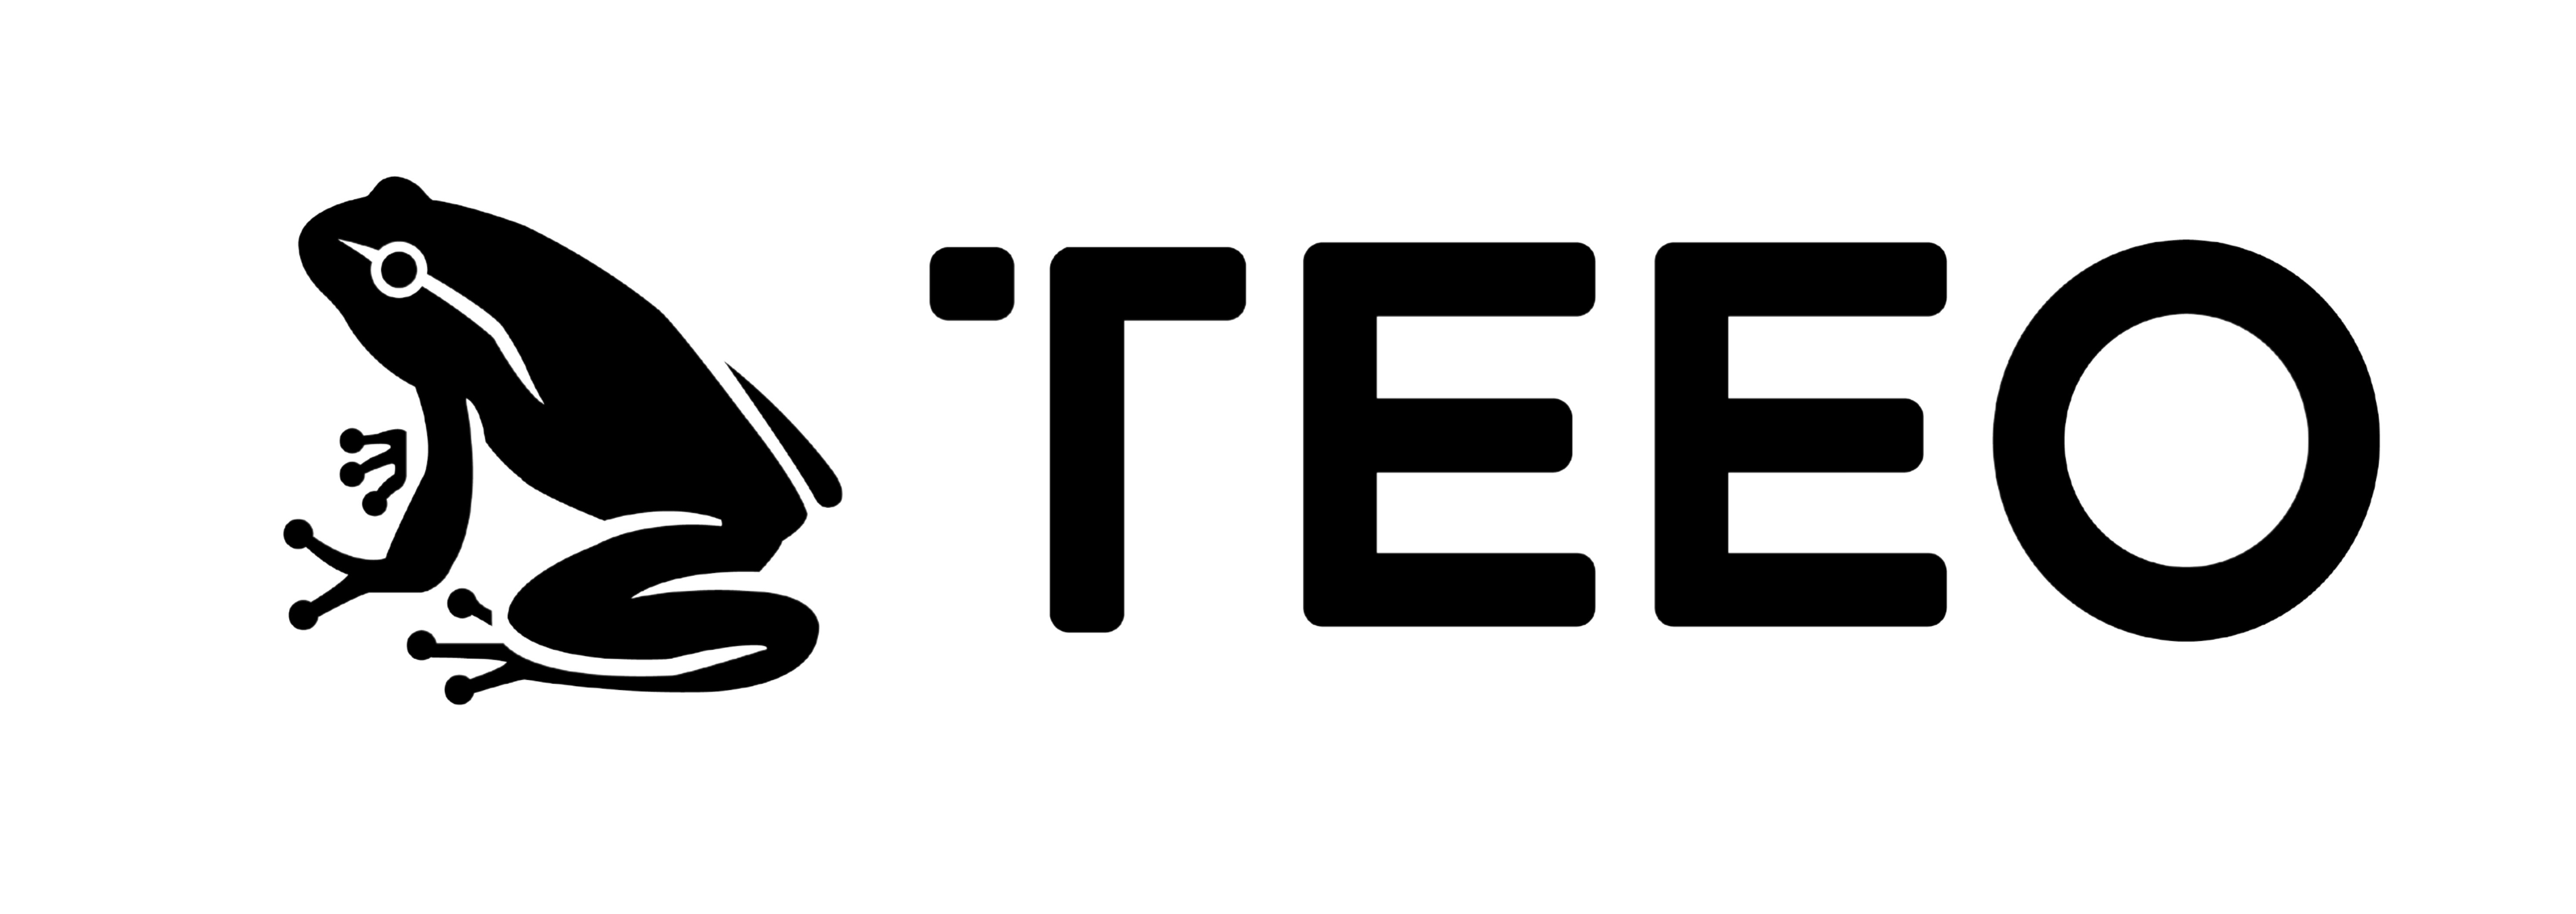 teeo logo